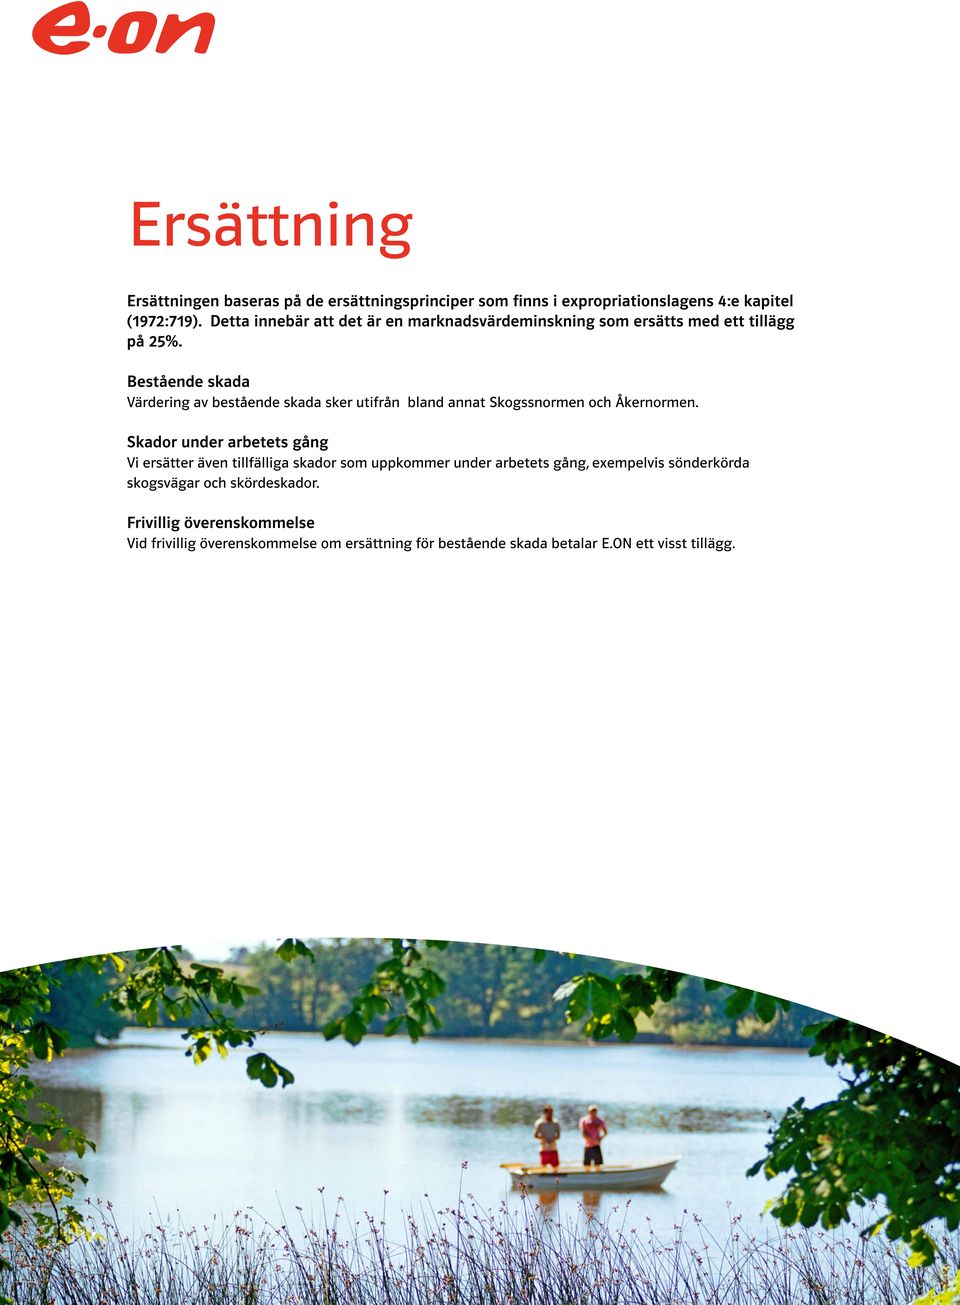 Bestående skada Värdering av bestående skada sker utifrån bland annat Skogssnormen och Åkernormen.